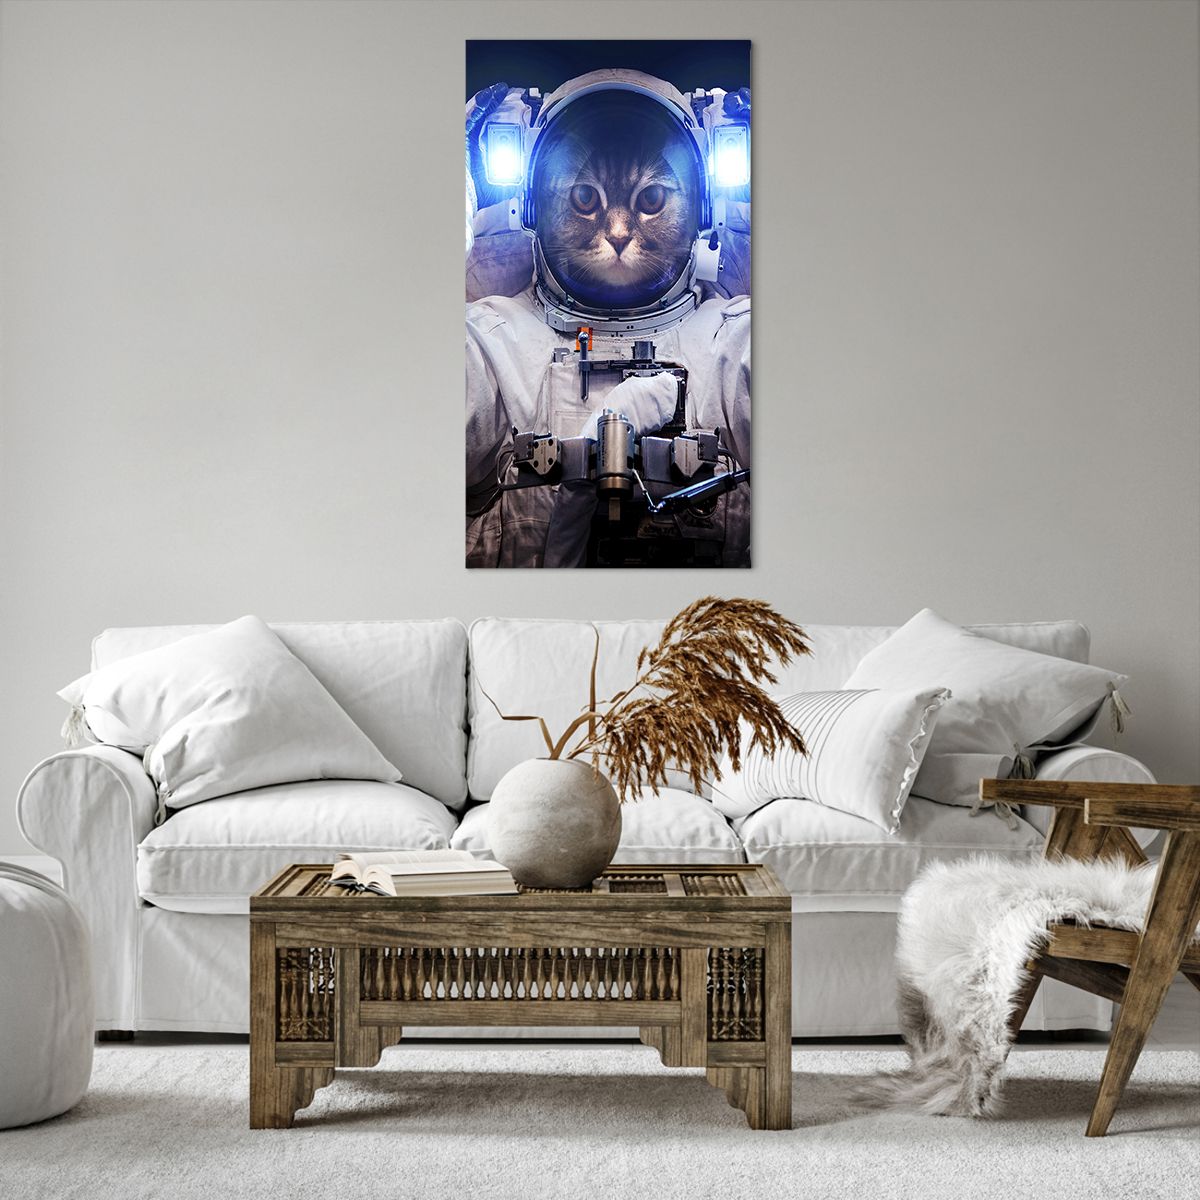 Bild auf Leinwand Abstraktion, Bild auf Leinwand Astronaut, Bild auf Leinwand Kosmos, Bild auf Leinwand Kunst, Bild auf Leinwand Katze